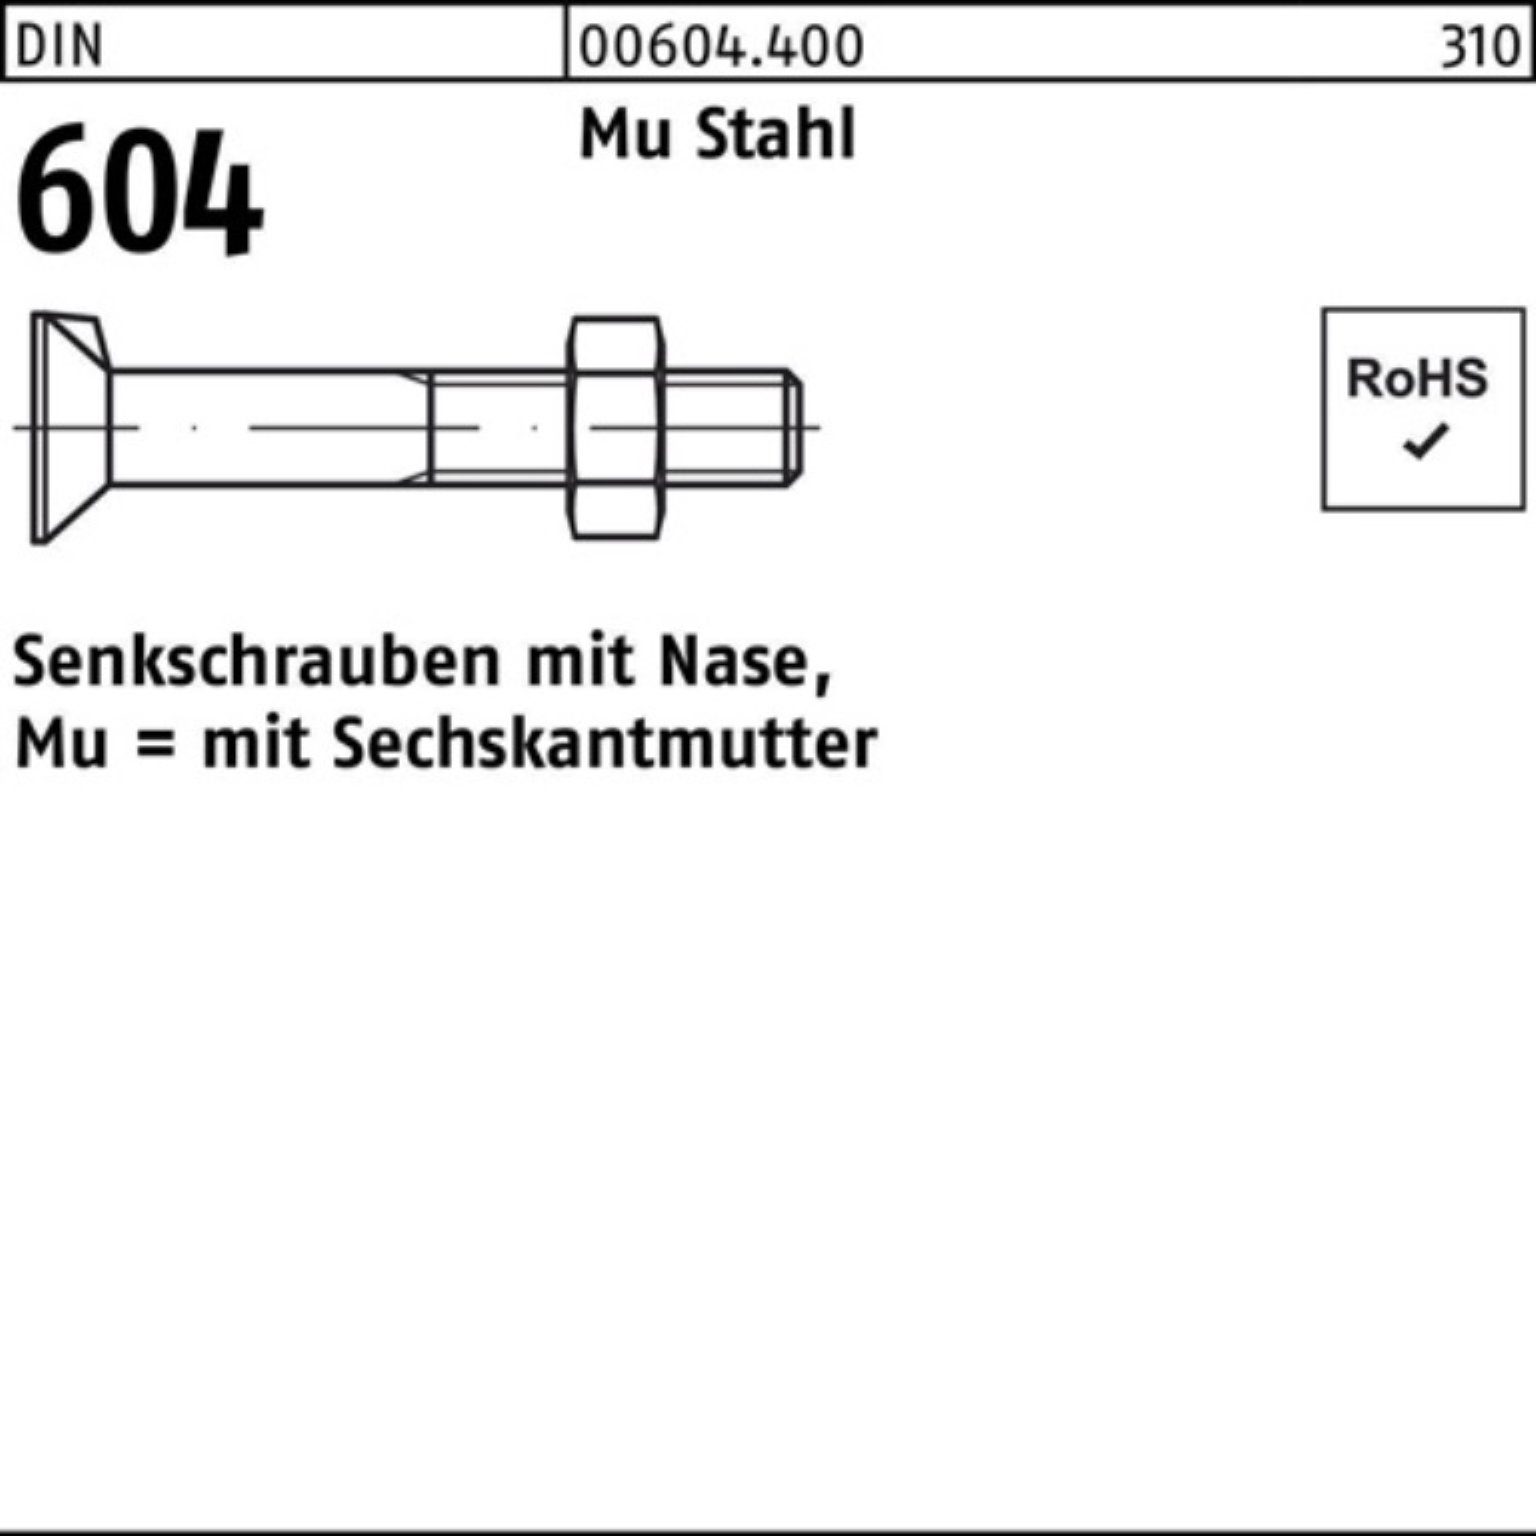 Reyher Senkschraube 100er Pack Senkschraube DIN 604 Nase/6-ktmutter M16x 60 Mu Stahl 4.6 5